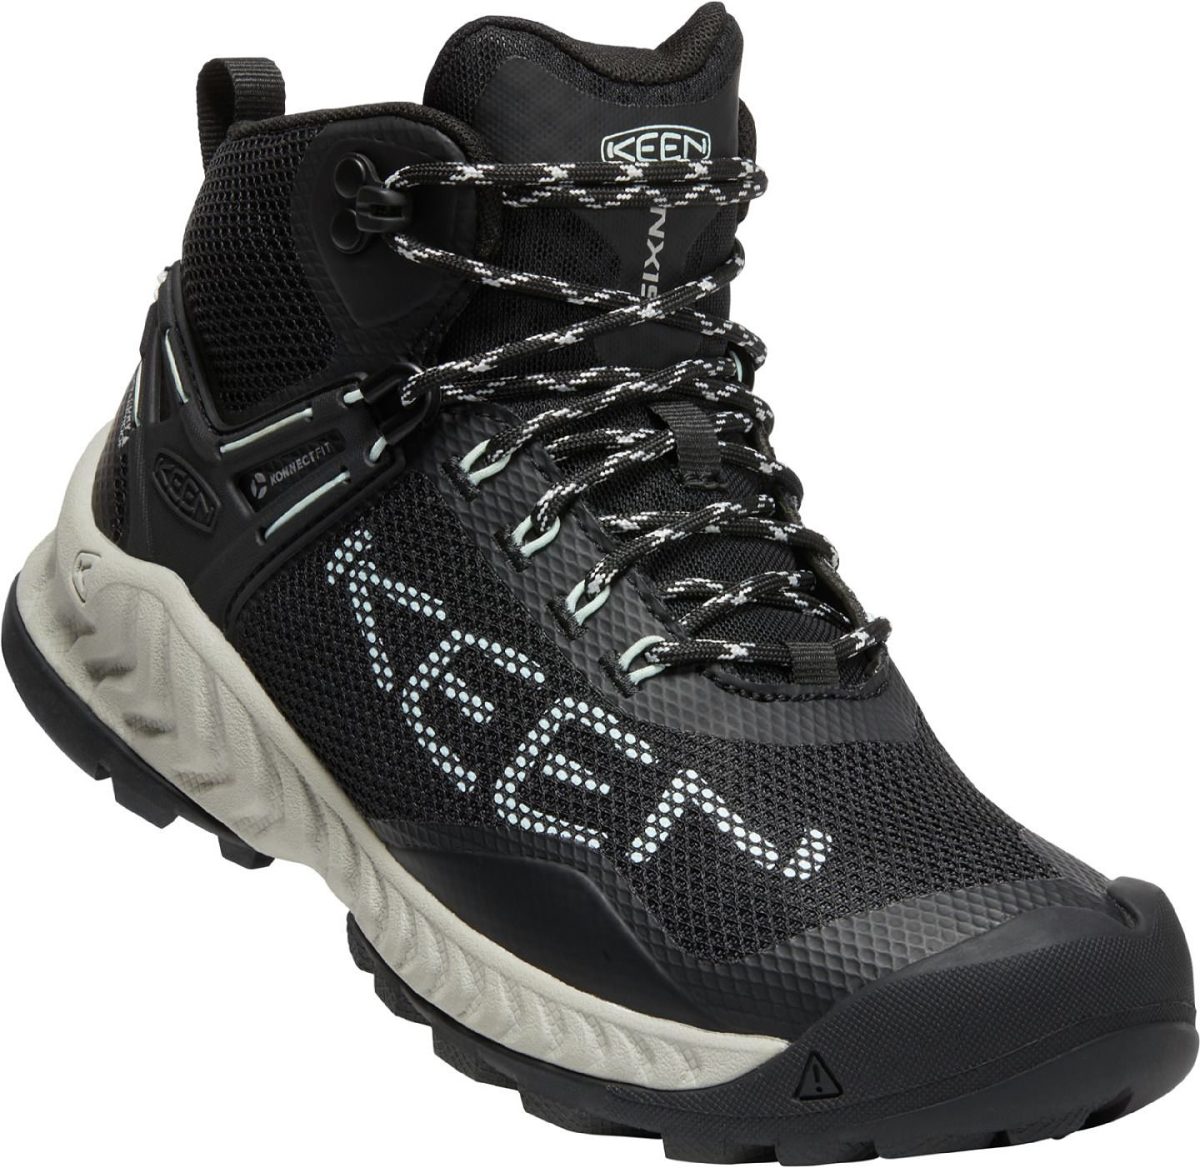 KEEN NXIS EVO Mid Waterproof Hiking Boots for Ladies